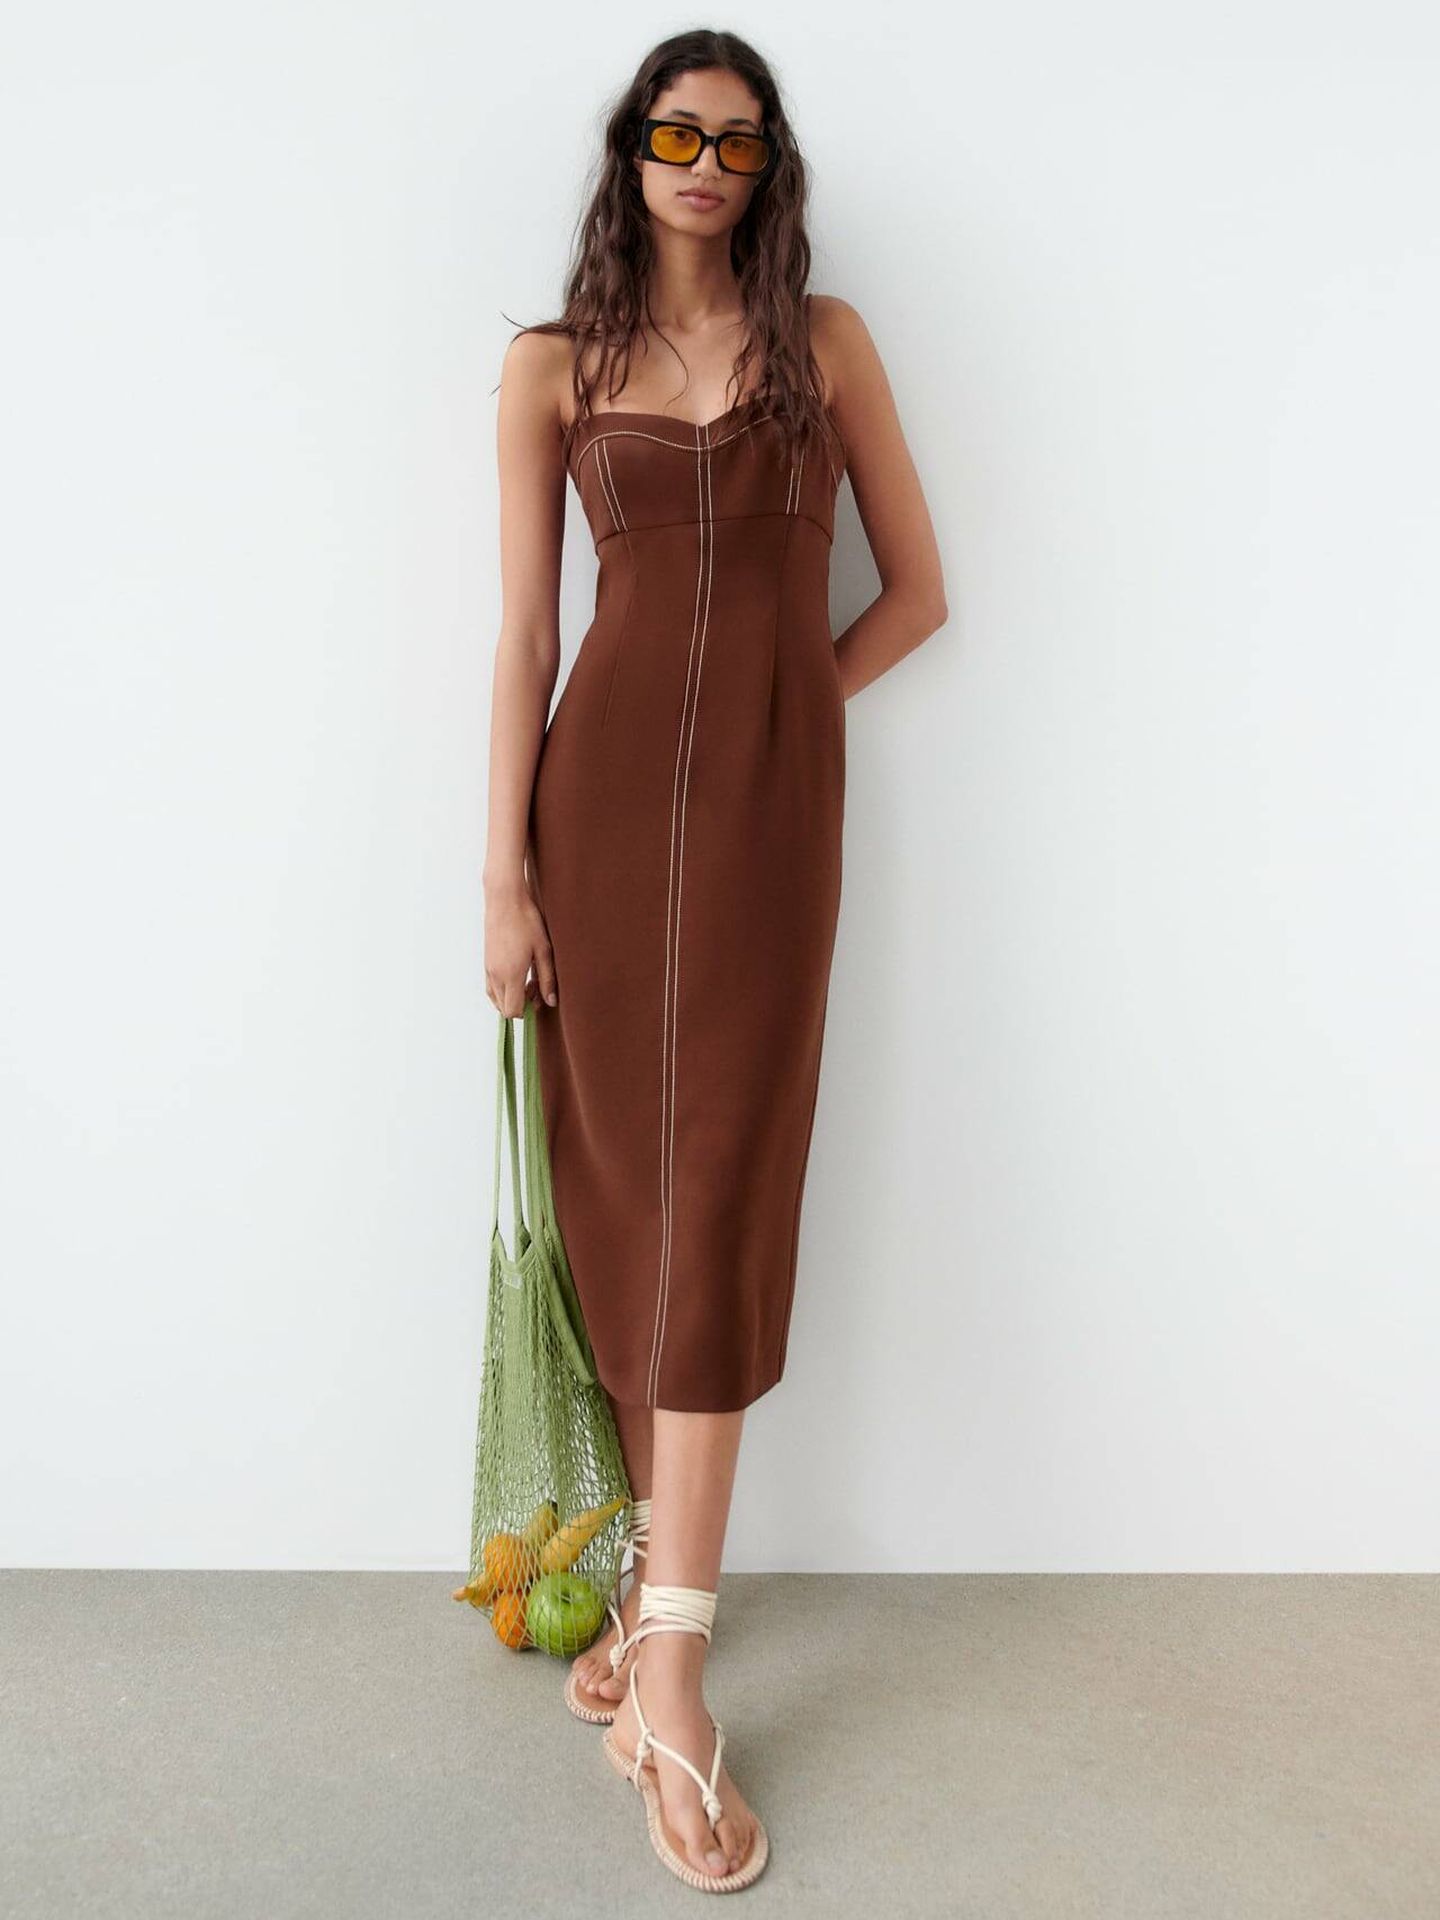 Vestido marrón de novedades. (Zara/Cortesía)